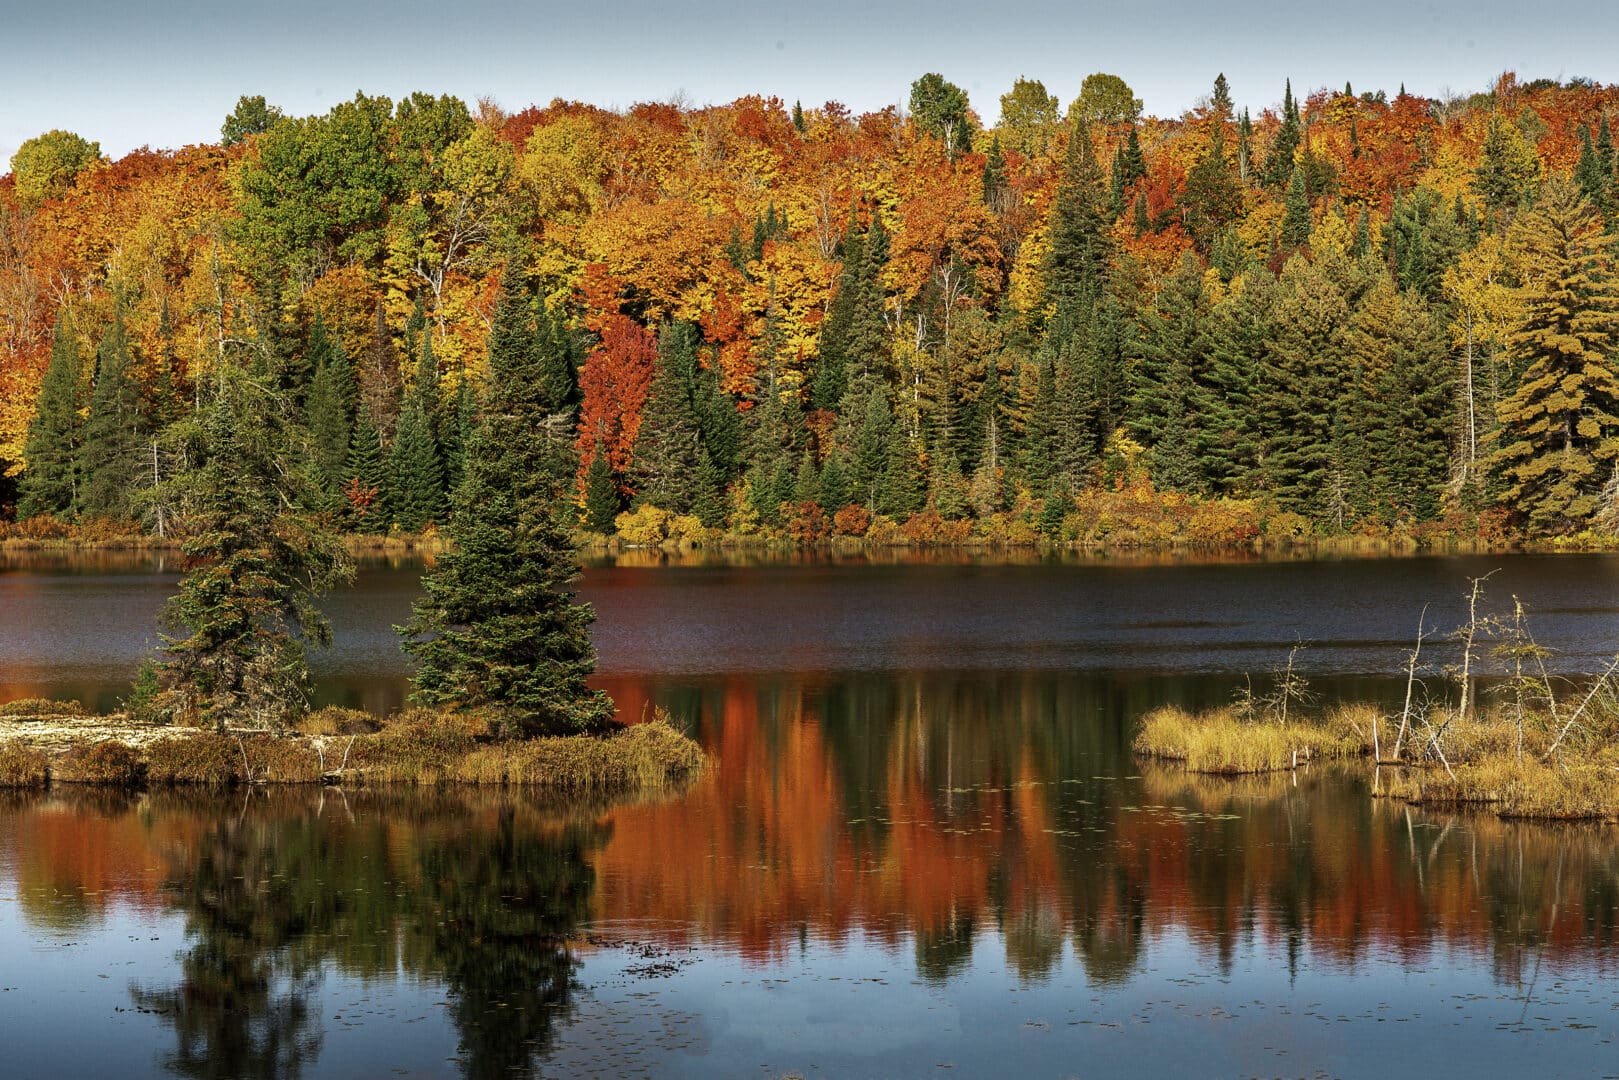 Beautiful fall foliage surrounding a peaceful lake.